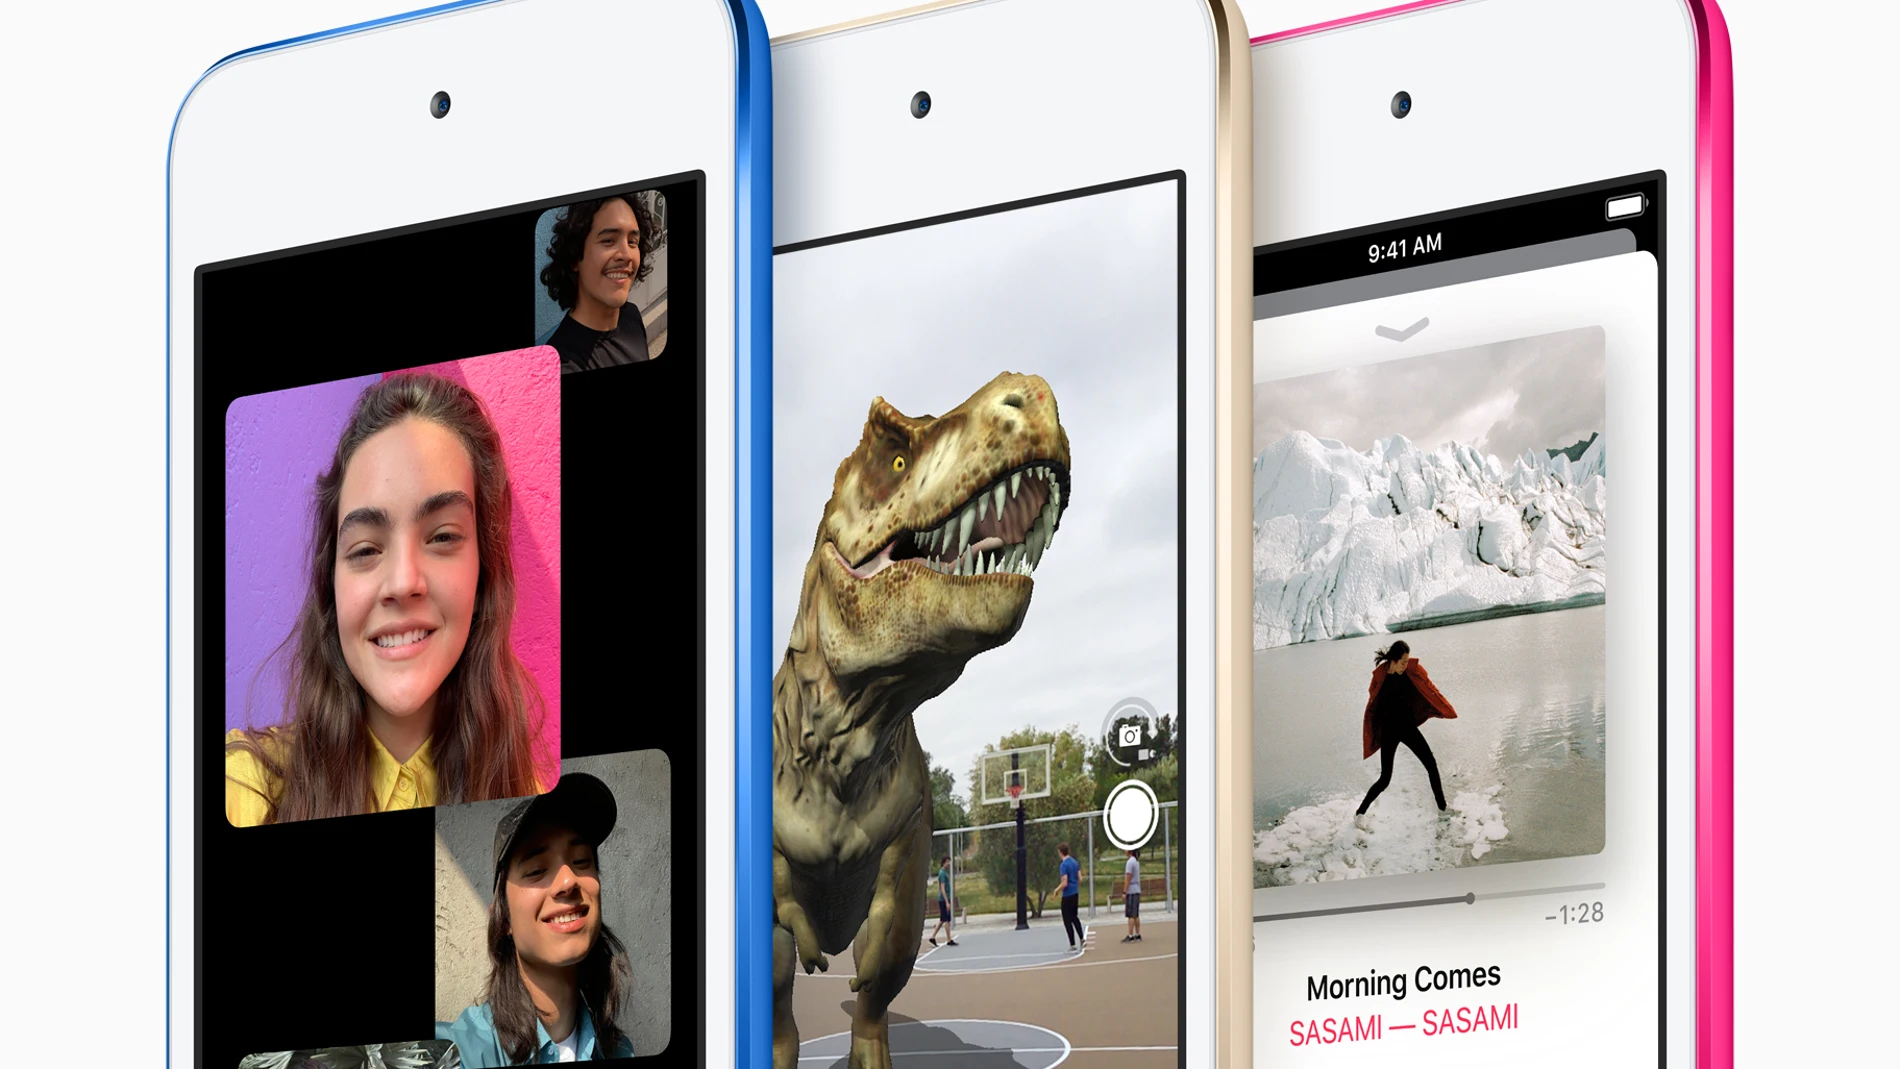 El nuevo iPod touch ofrece FaceTime de grupo y realidad aumentada por primera vez en un iPod / Foto: Apple